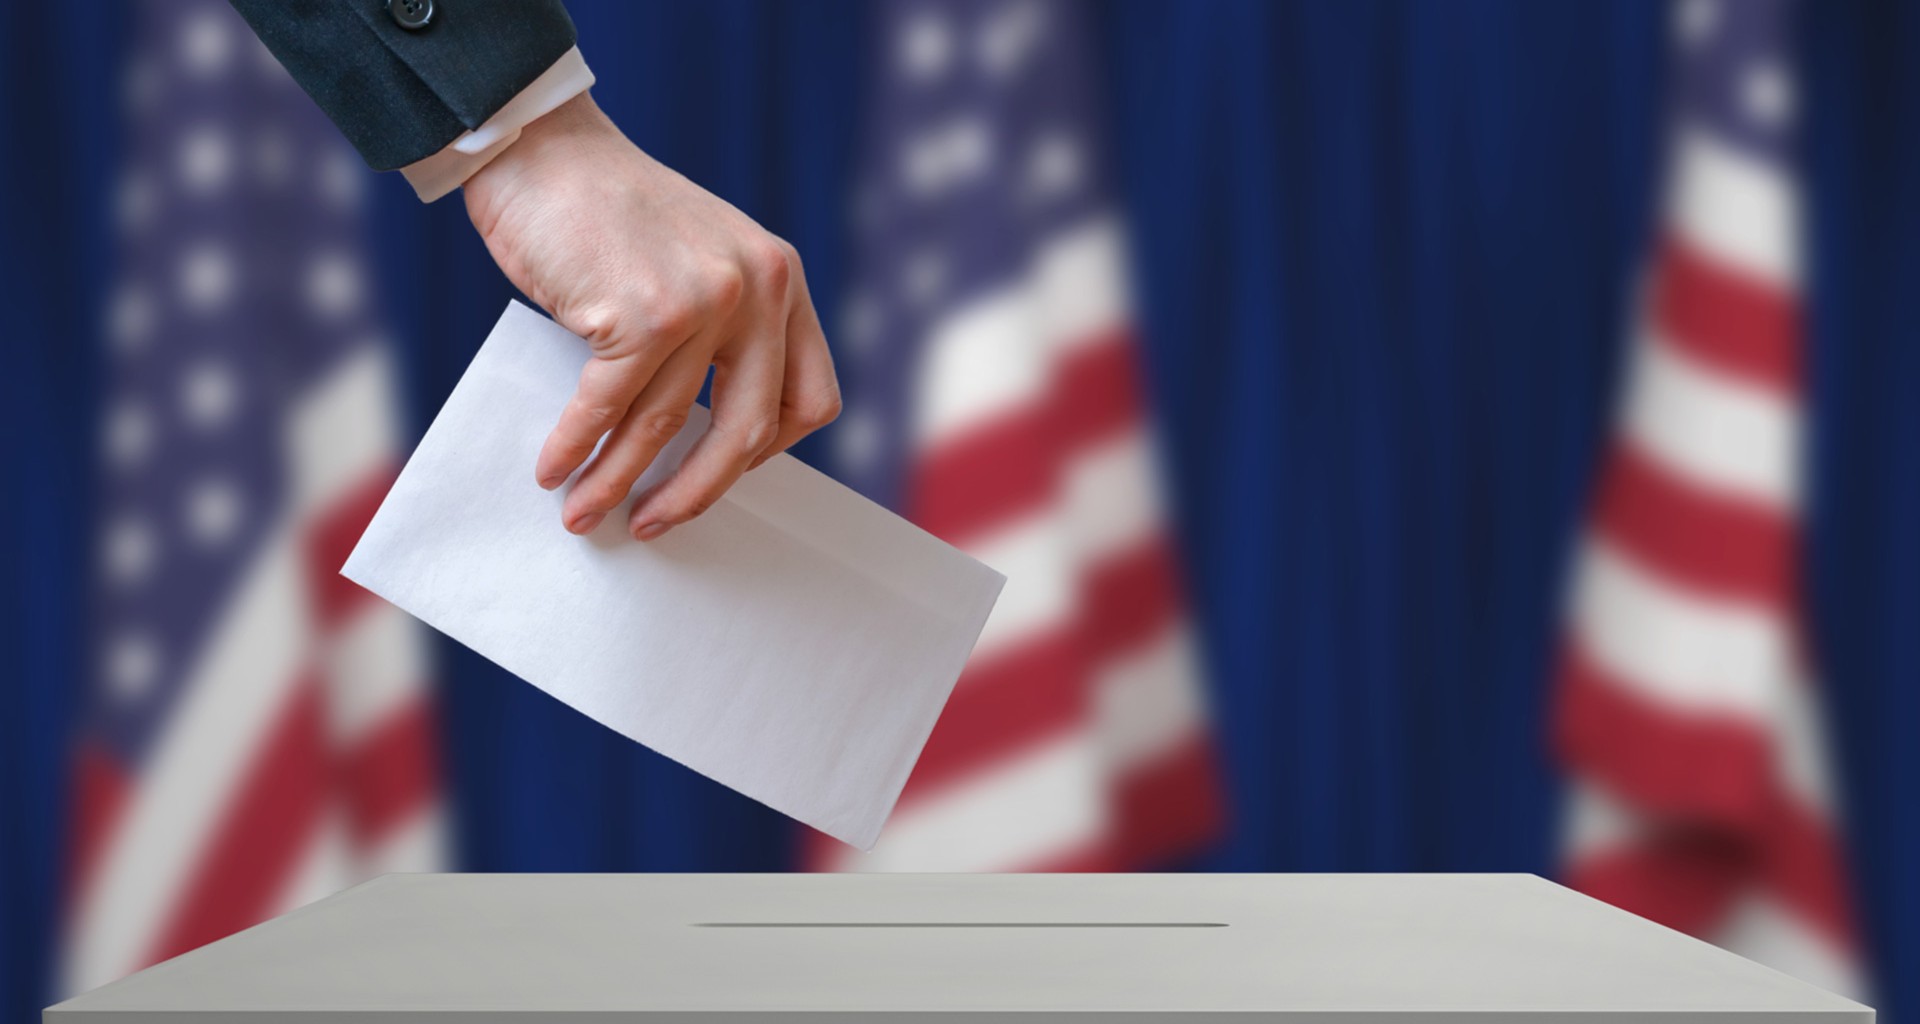 Las elecciones presidenciales de Estados Unidos se celebrarán el martes 3 de noviembre de 2020. (Foto Prensa Libre: Shutterstock)